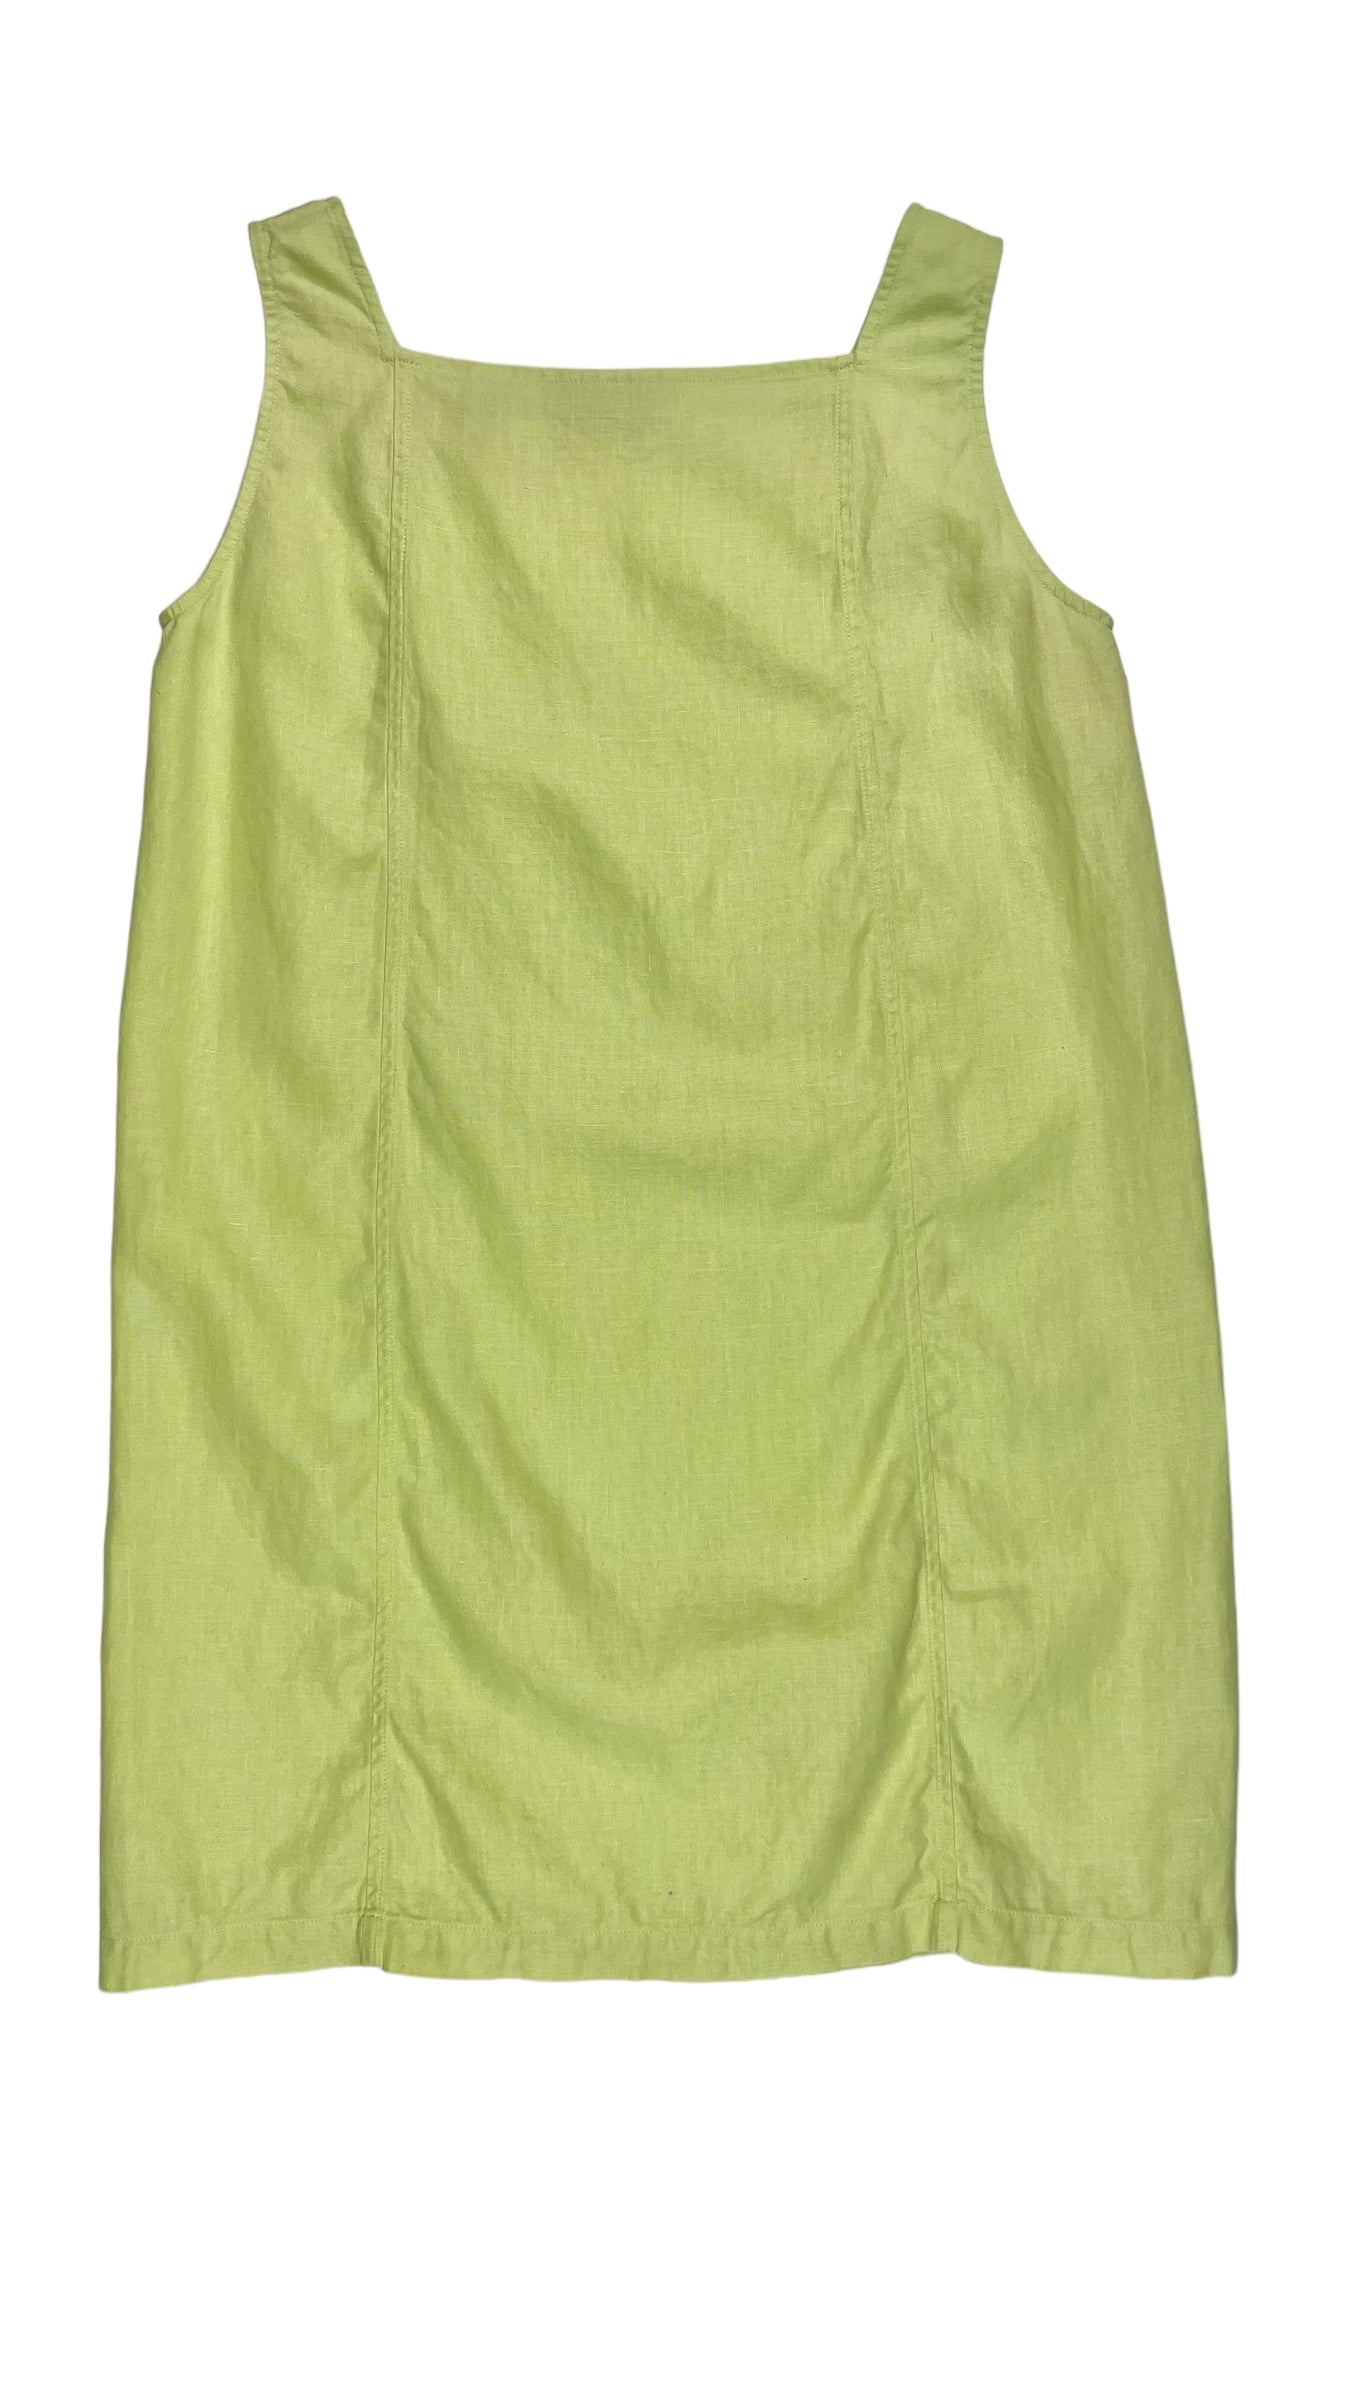 Vintage 90s neon lime green tank dress - Size M